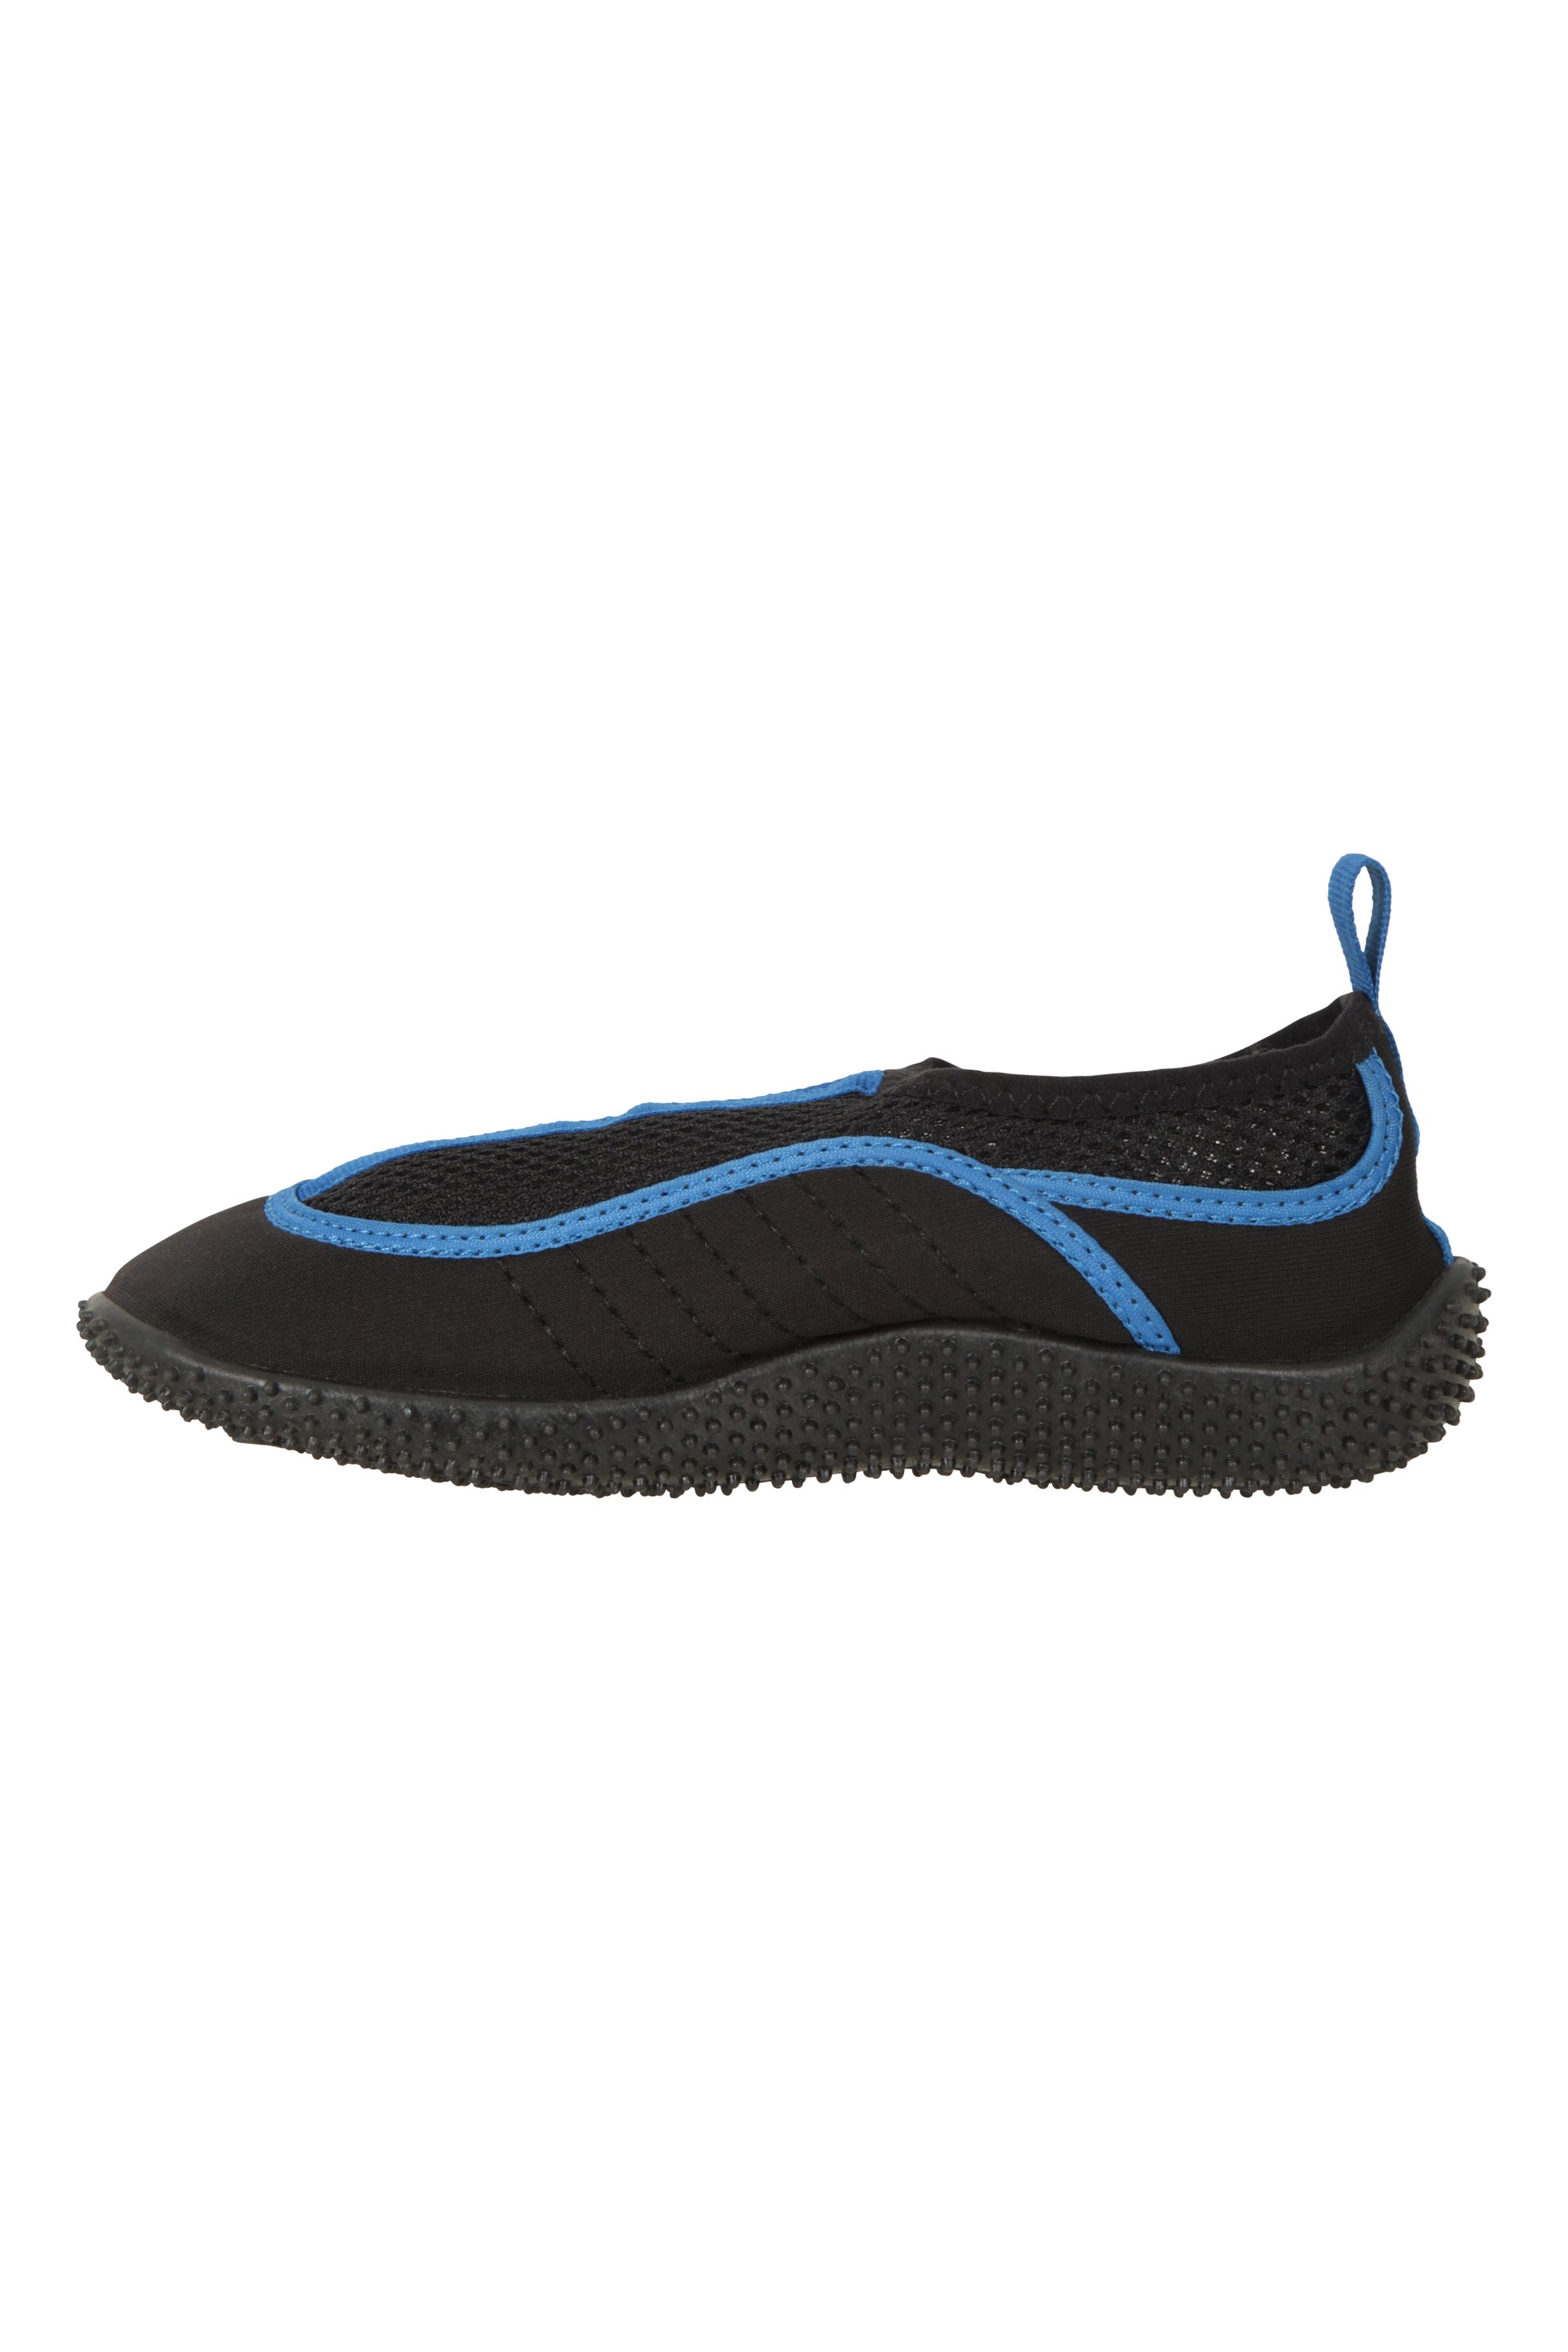 Bermuda Kids Water Shoes